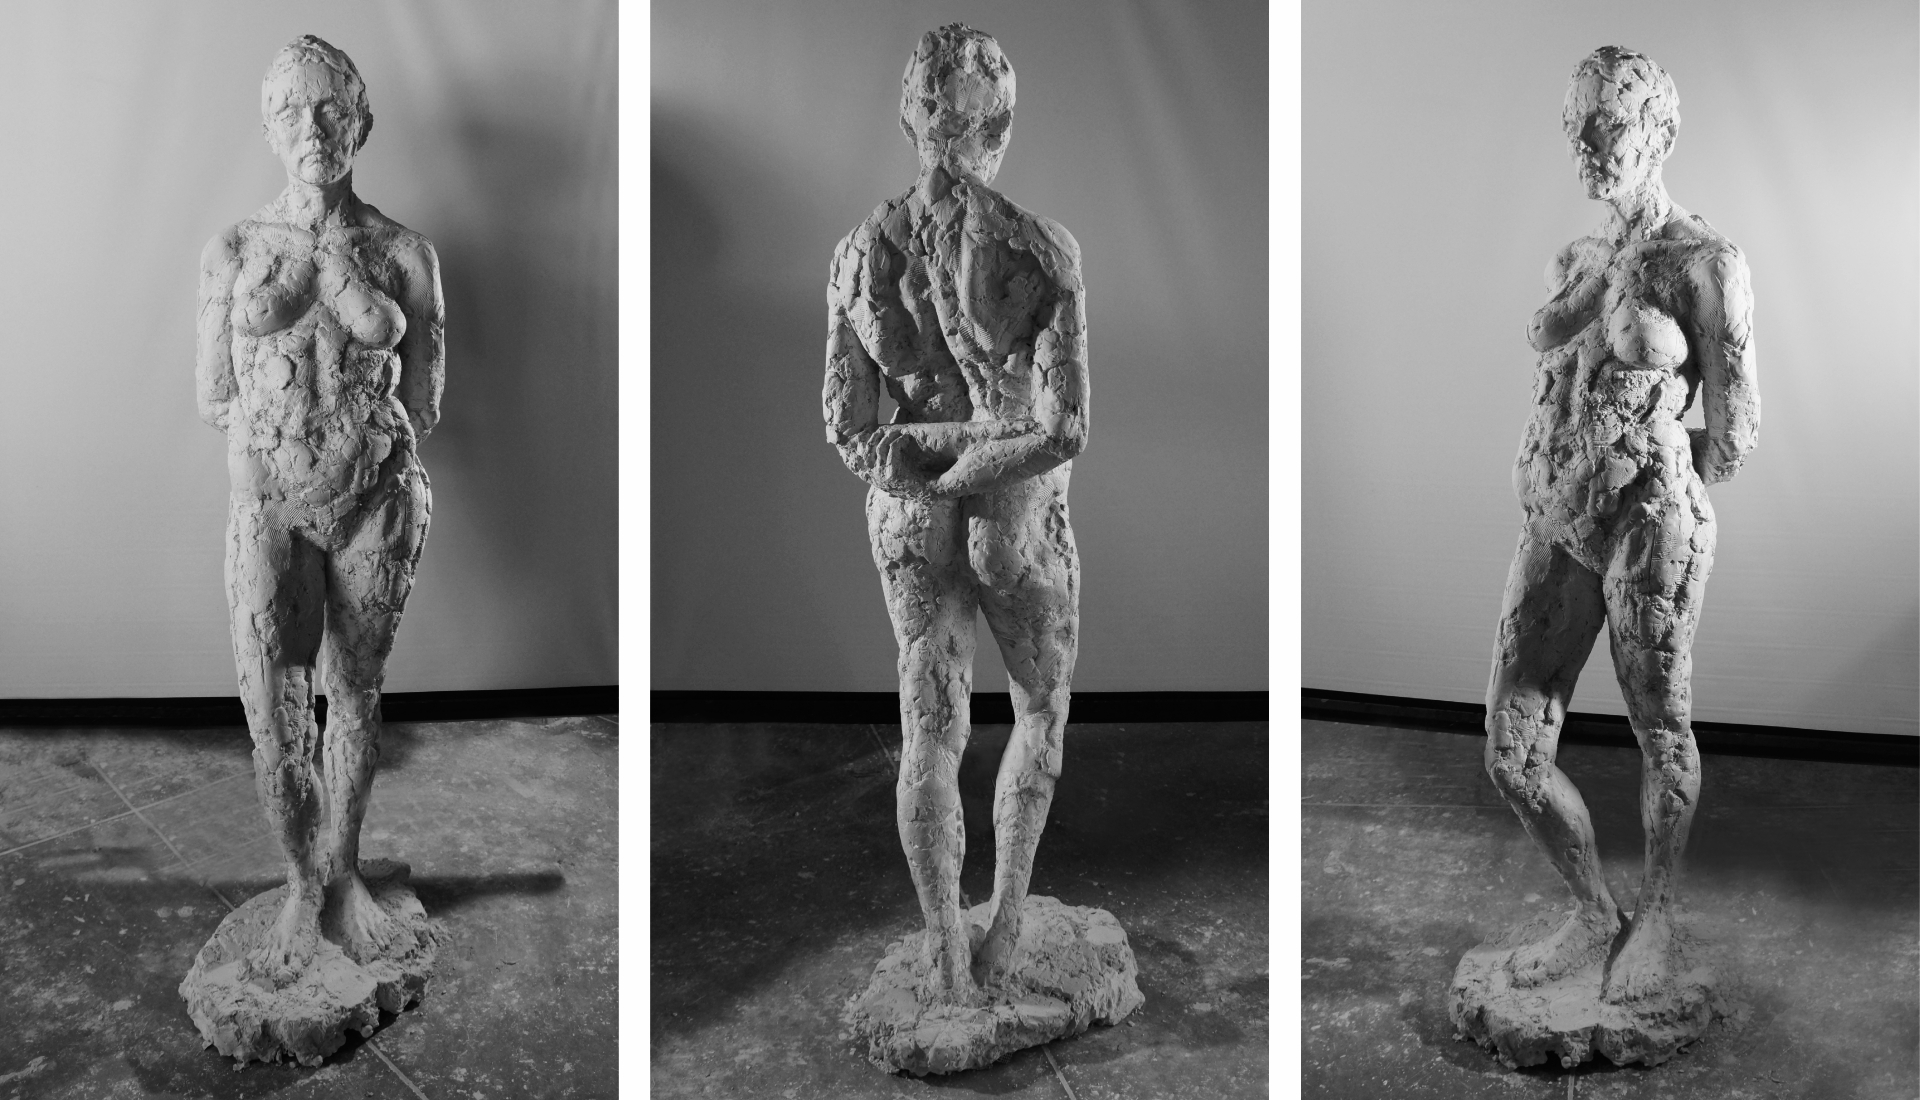 Rzeźba przedstawia modelkę w klasycznej pozie kontrapostu. Ciężar ciała modelki opiera się na jednej nodze. Jej ręce ułożone są za plecami a głowa lekko pochylona. Rzeźba została odlana w gipsie.